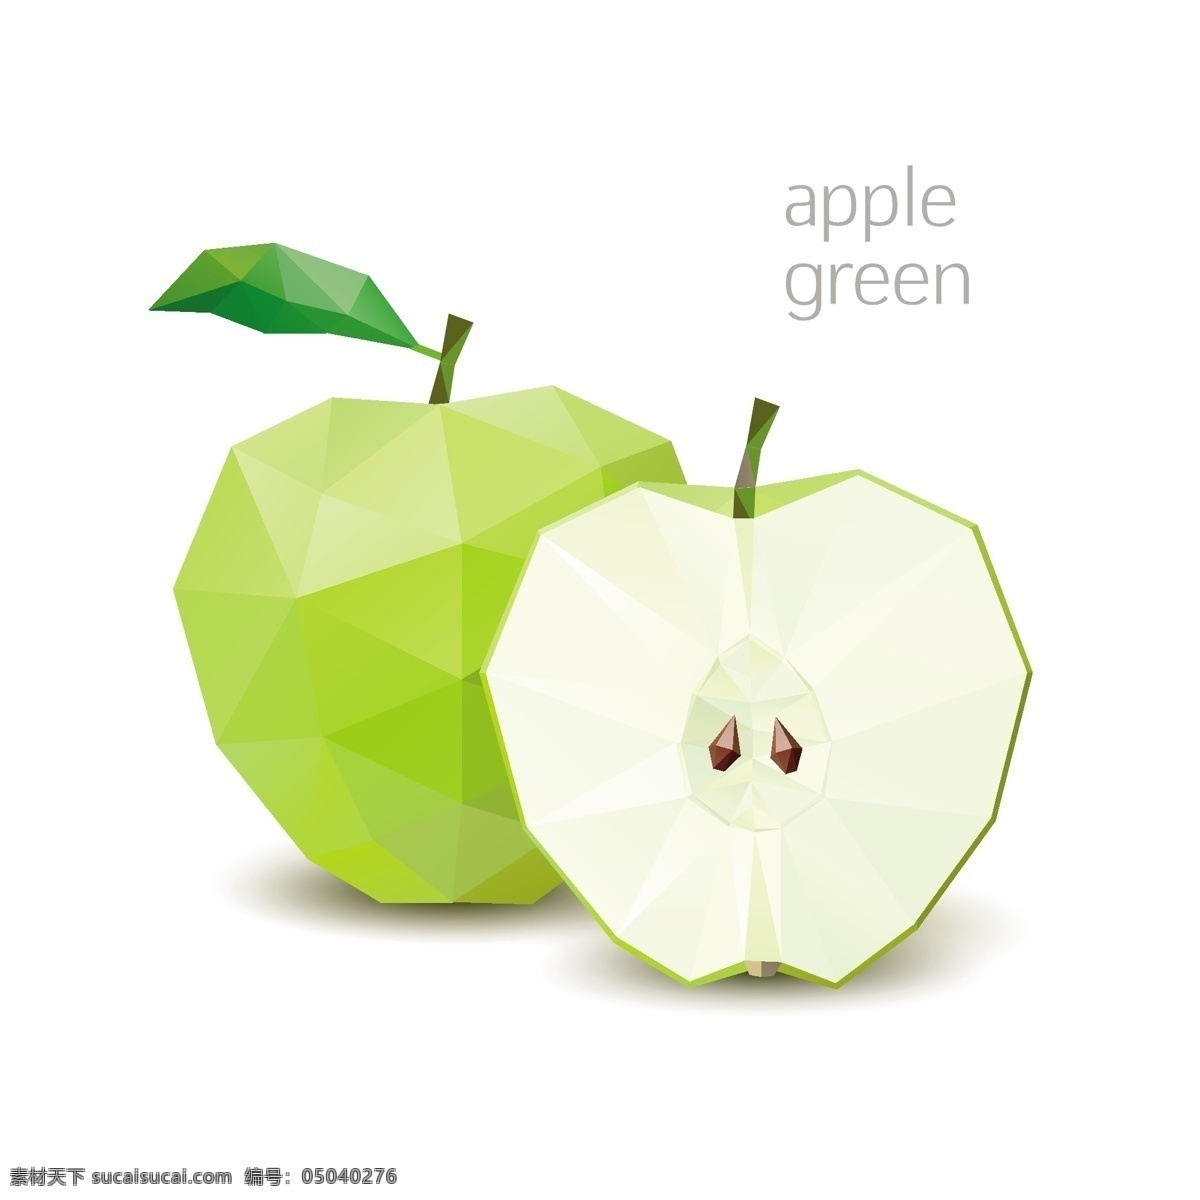 马赛克水果 水果 青苹果 像素化 几何图案 创意设计 马赛克背景 三角形 多边形 不规则图案 卡通背景 抽象背景 生物世界 矢量